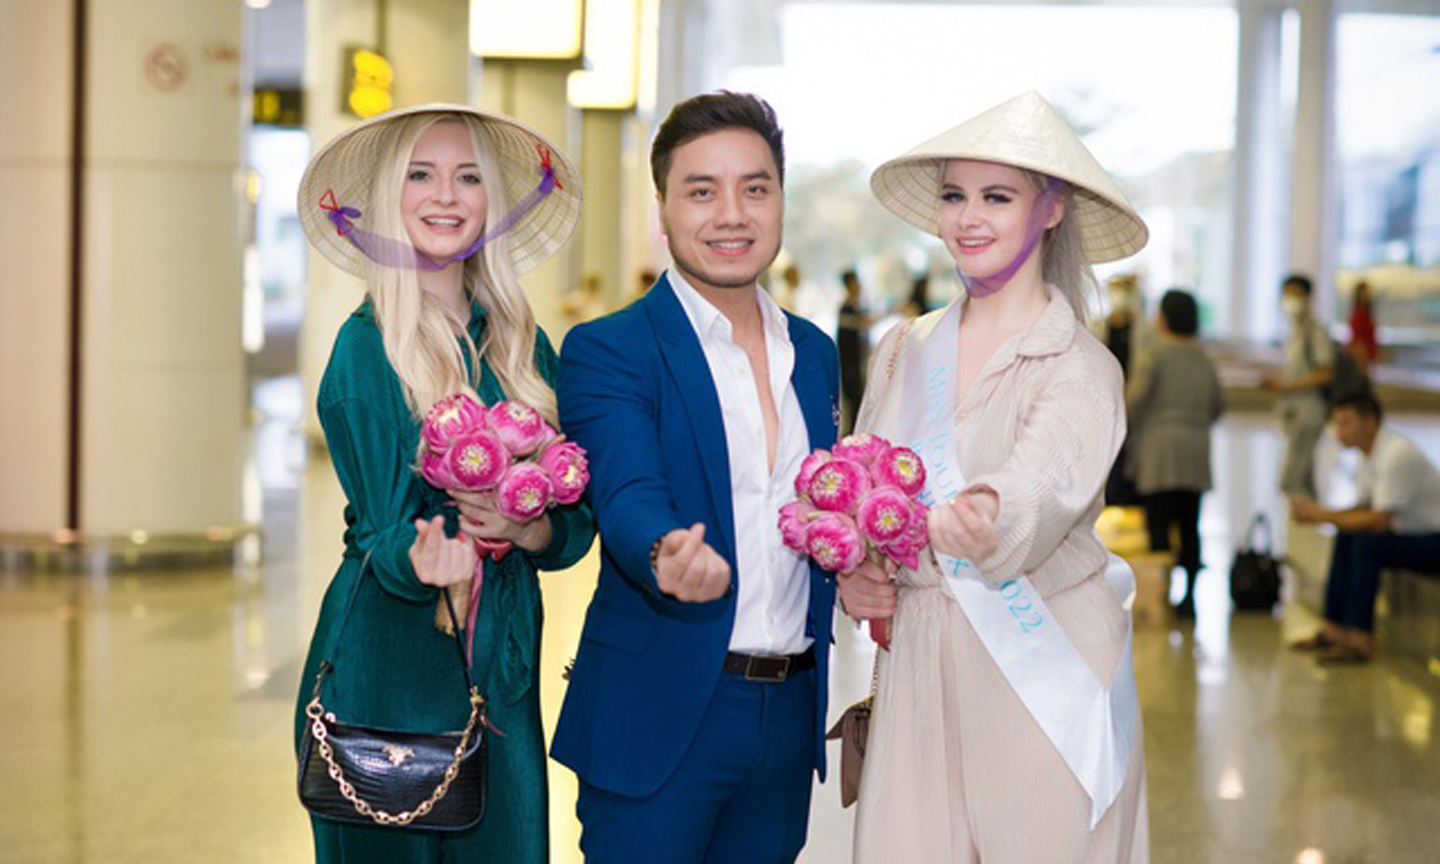 Hoa hậu Du lịch các nước được chào đón nồng hậu tại Việt Nam với hoa sen và nón lá. Ảnh: VGP